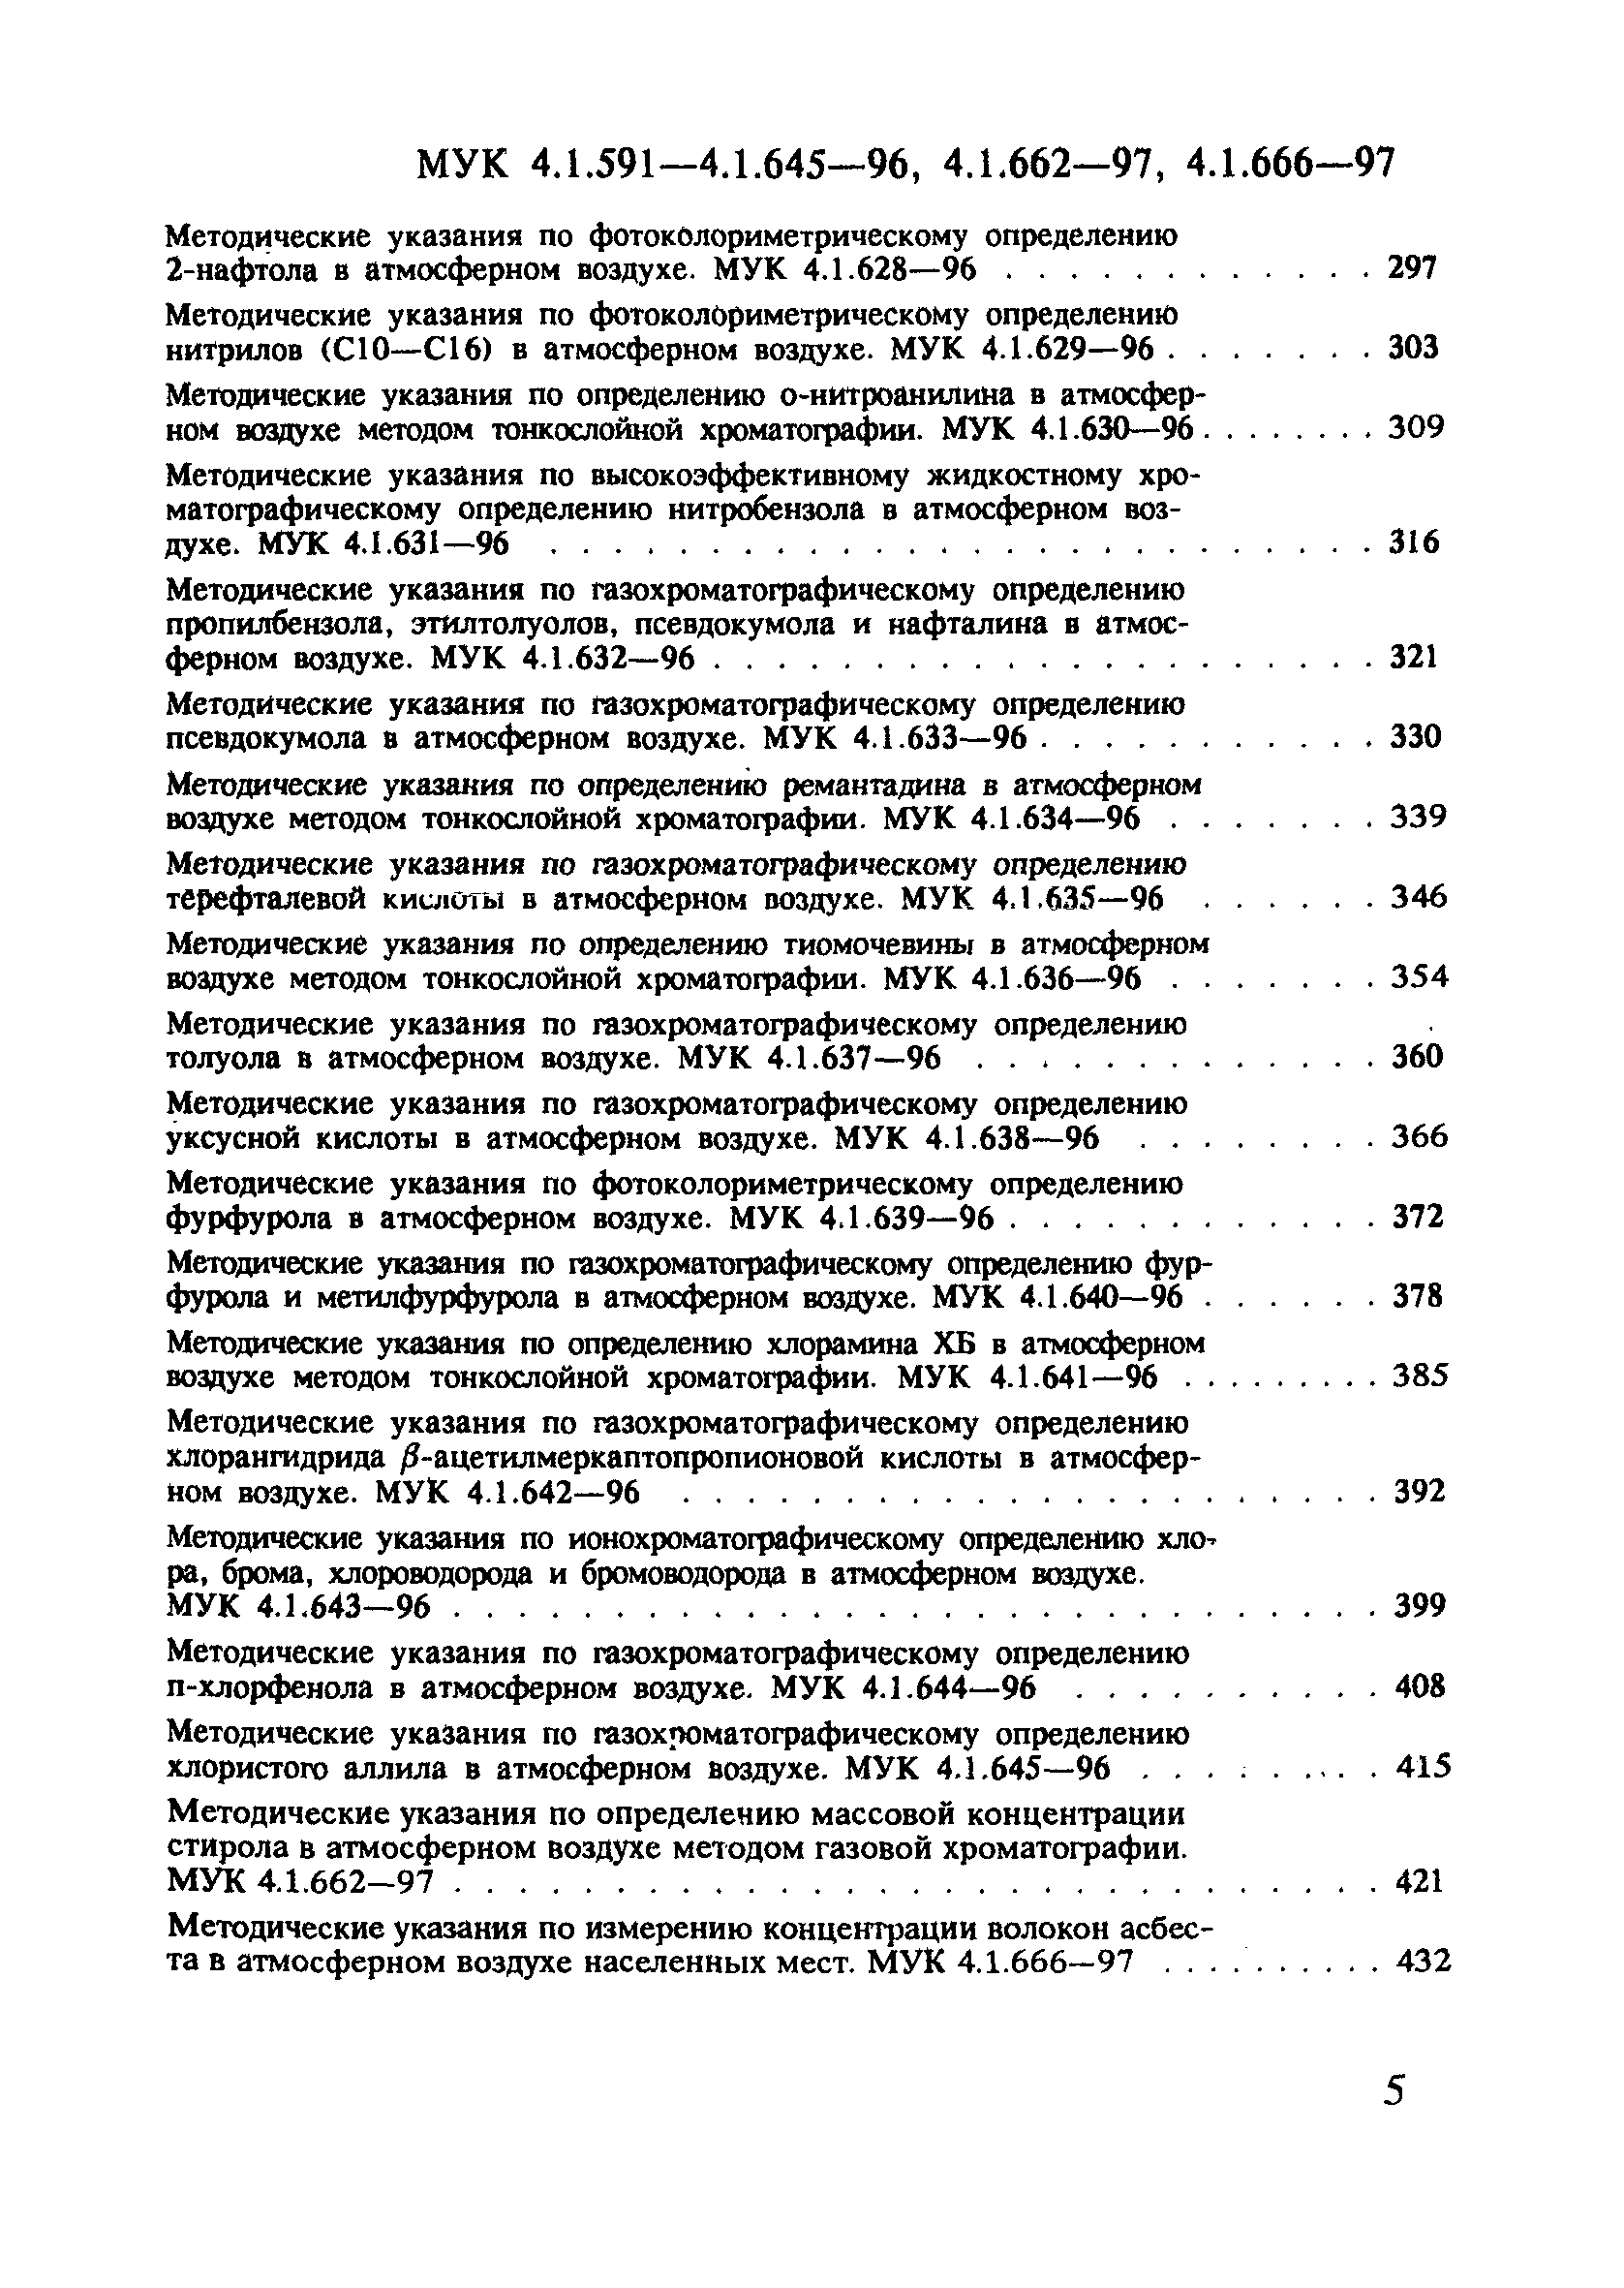 МУК 4.1.602-96